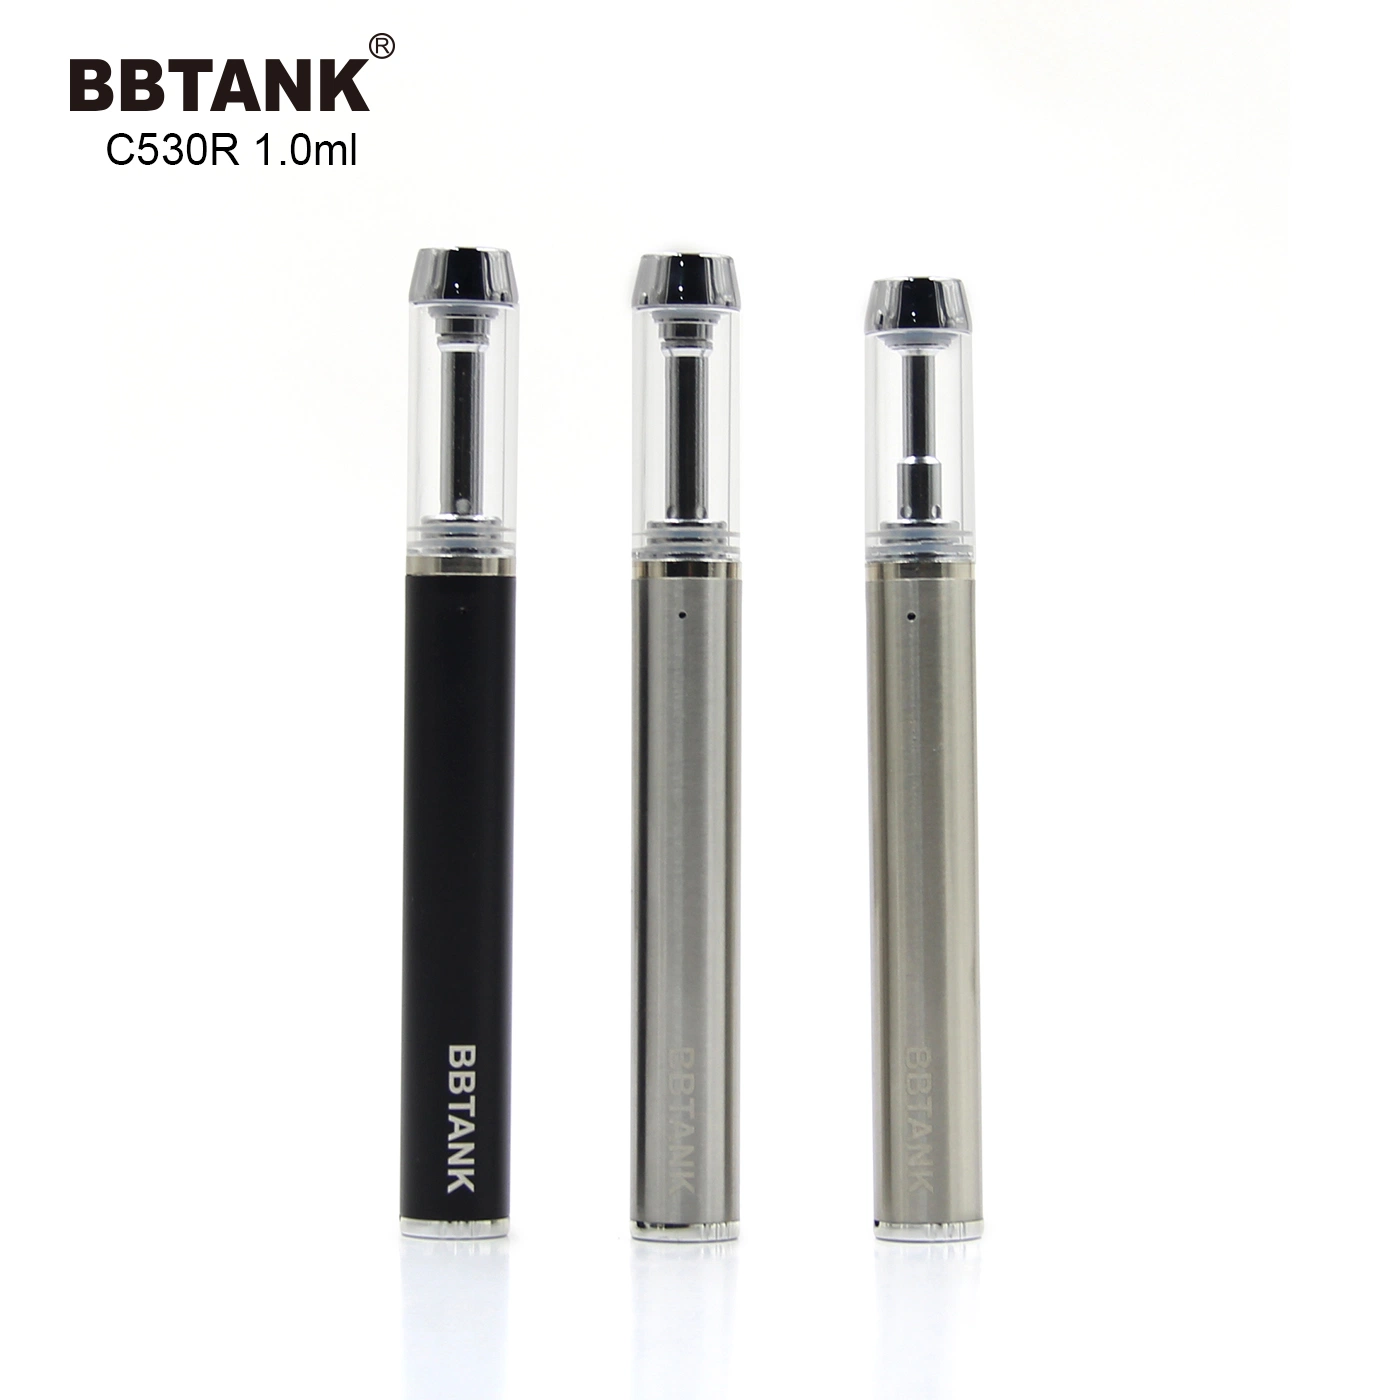 Bbtank OEM/ODM High Quality 1ml Battery Oil Pen Disposable Vape Pen